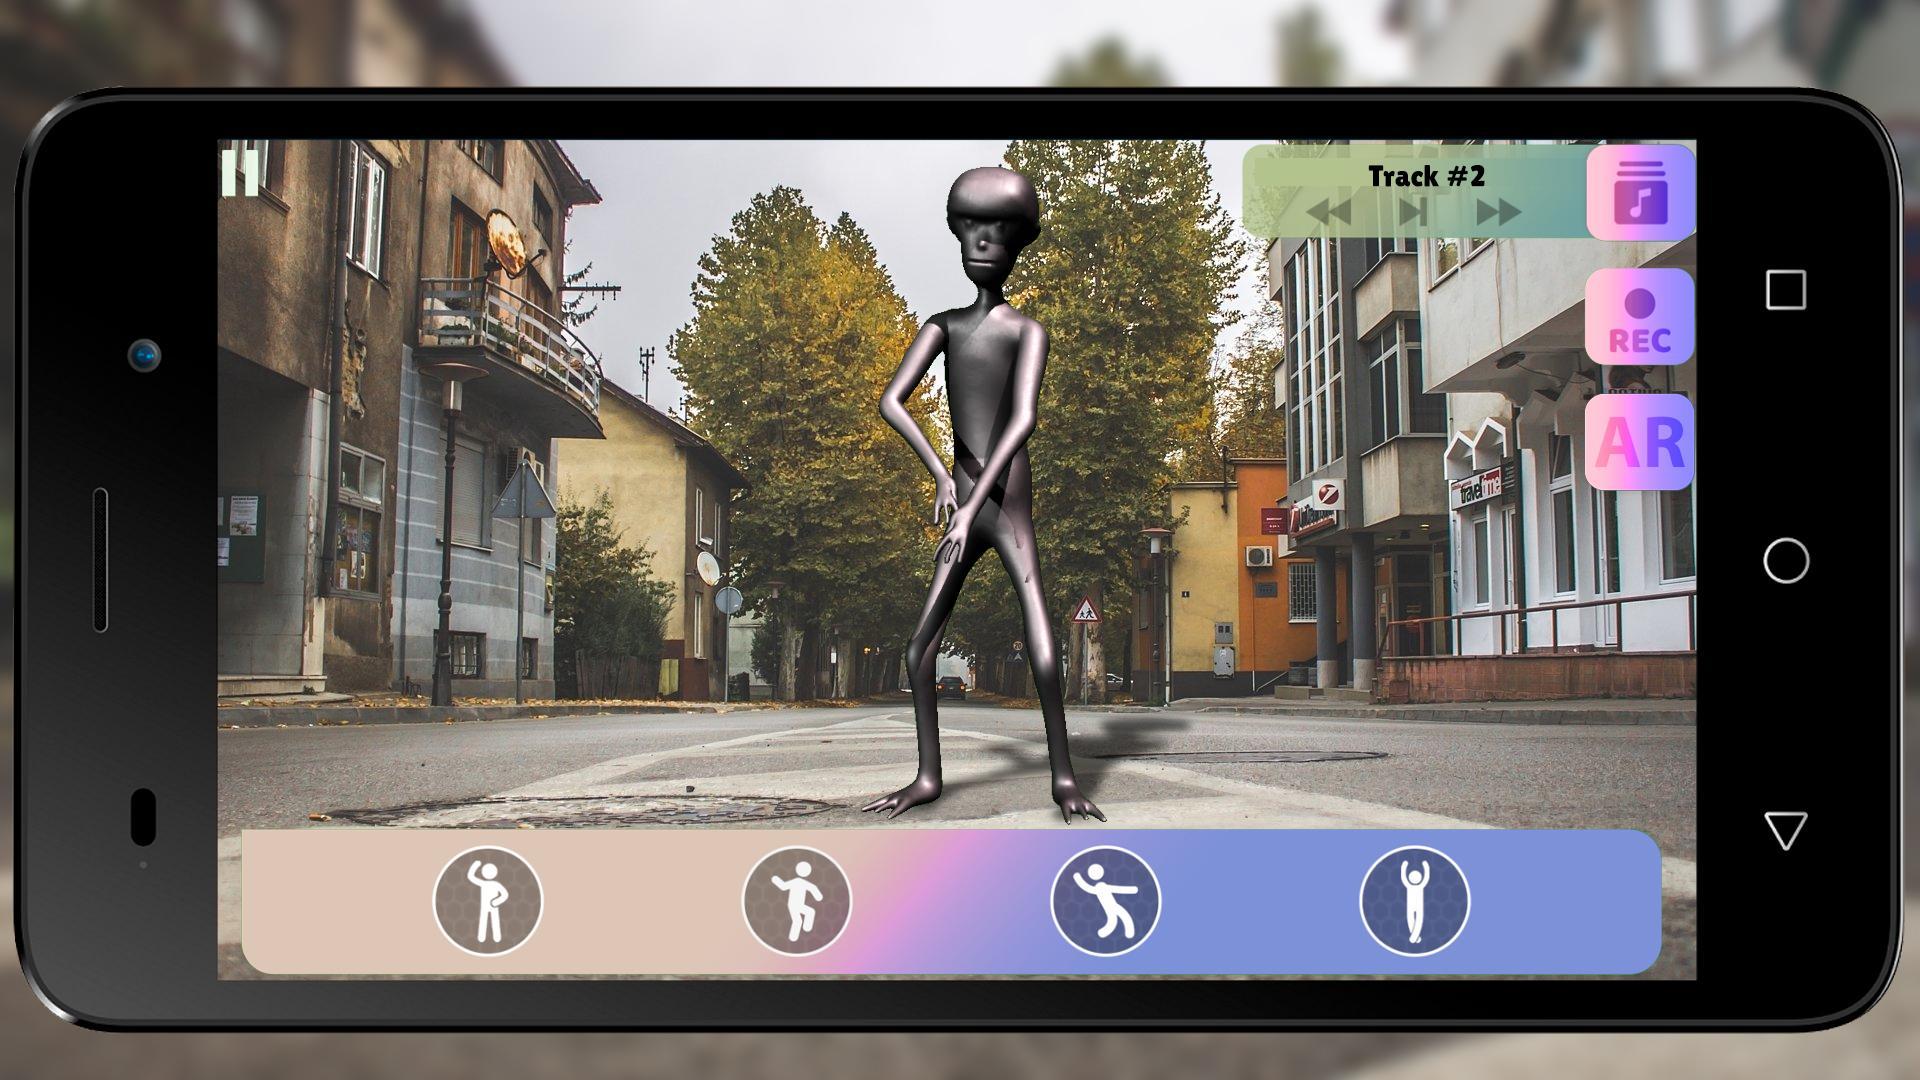 Howard The Alien Dance Simulator For Android Apk Download - dancing simulator roblox group